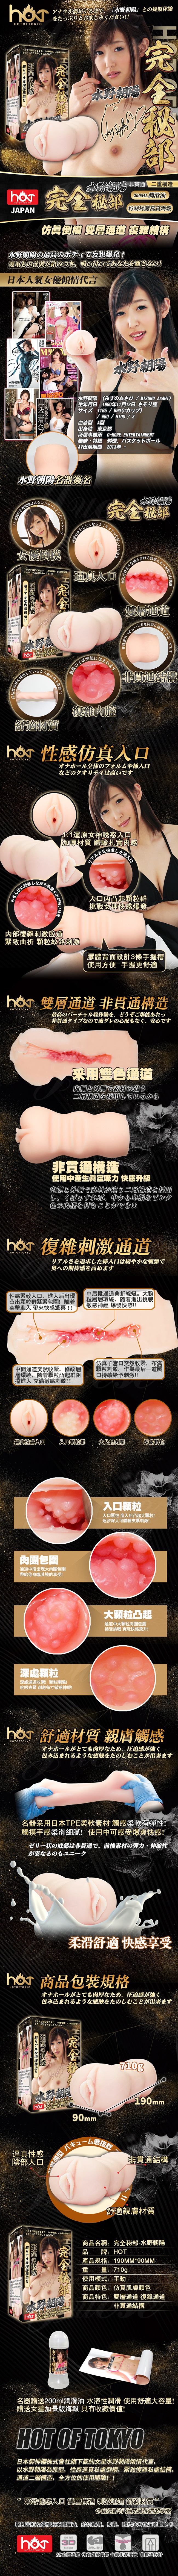 日本HOT-完全秘部 二層構造粉嫩夾吸自慰套-水野朝陽(特)